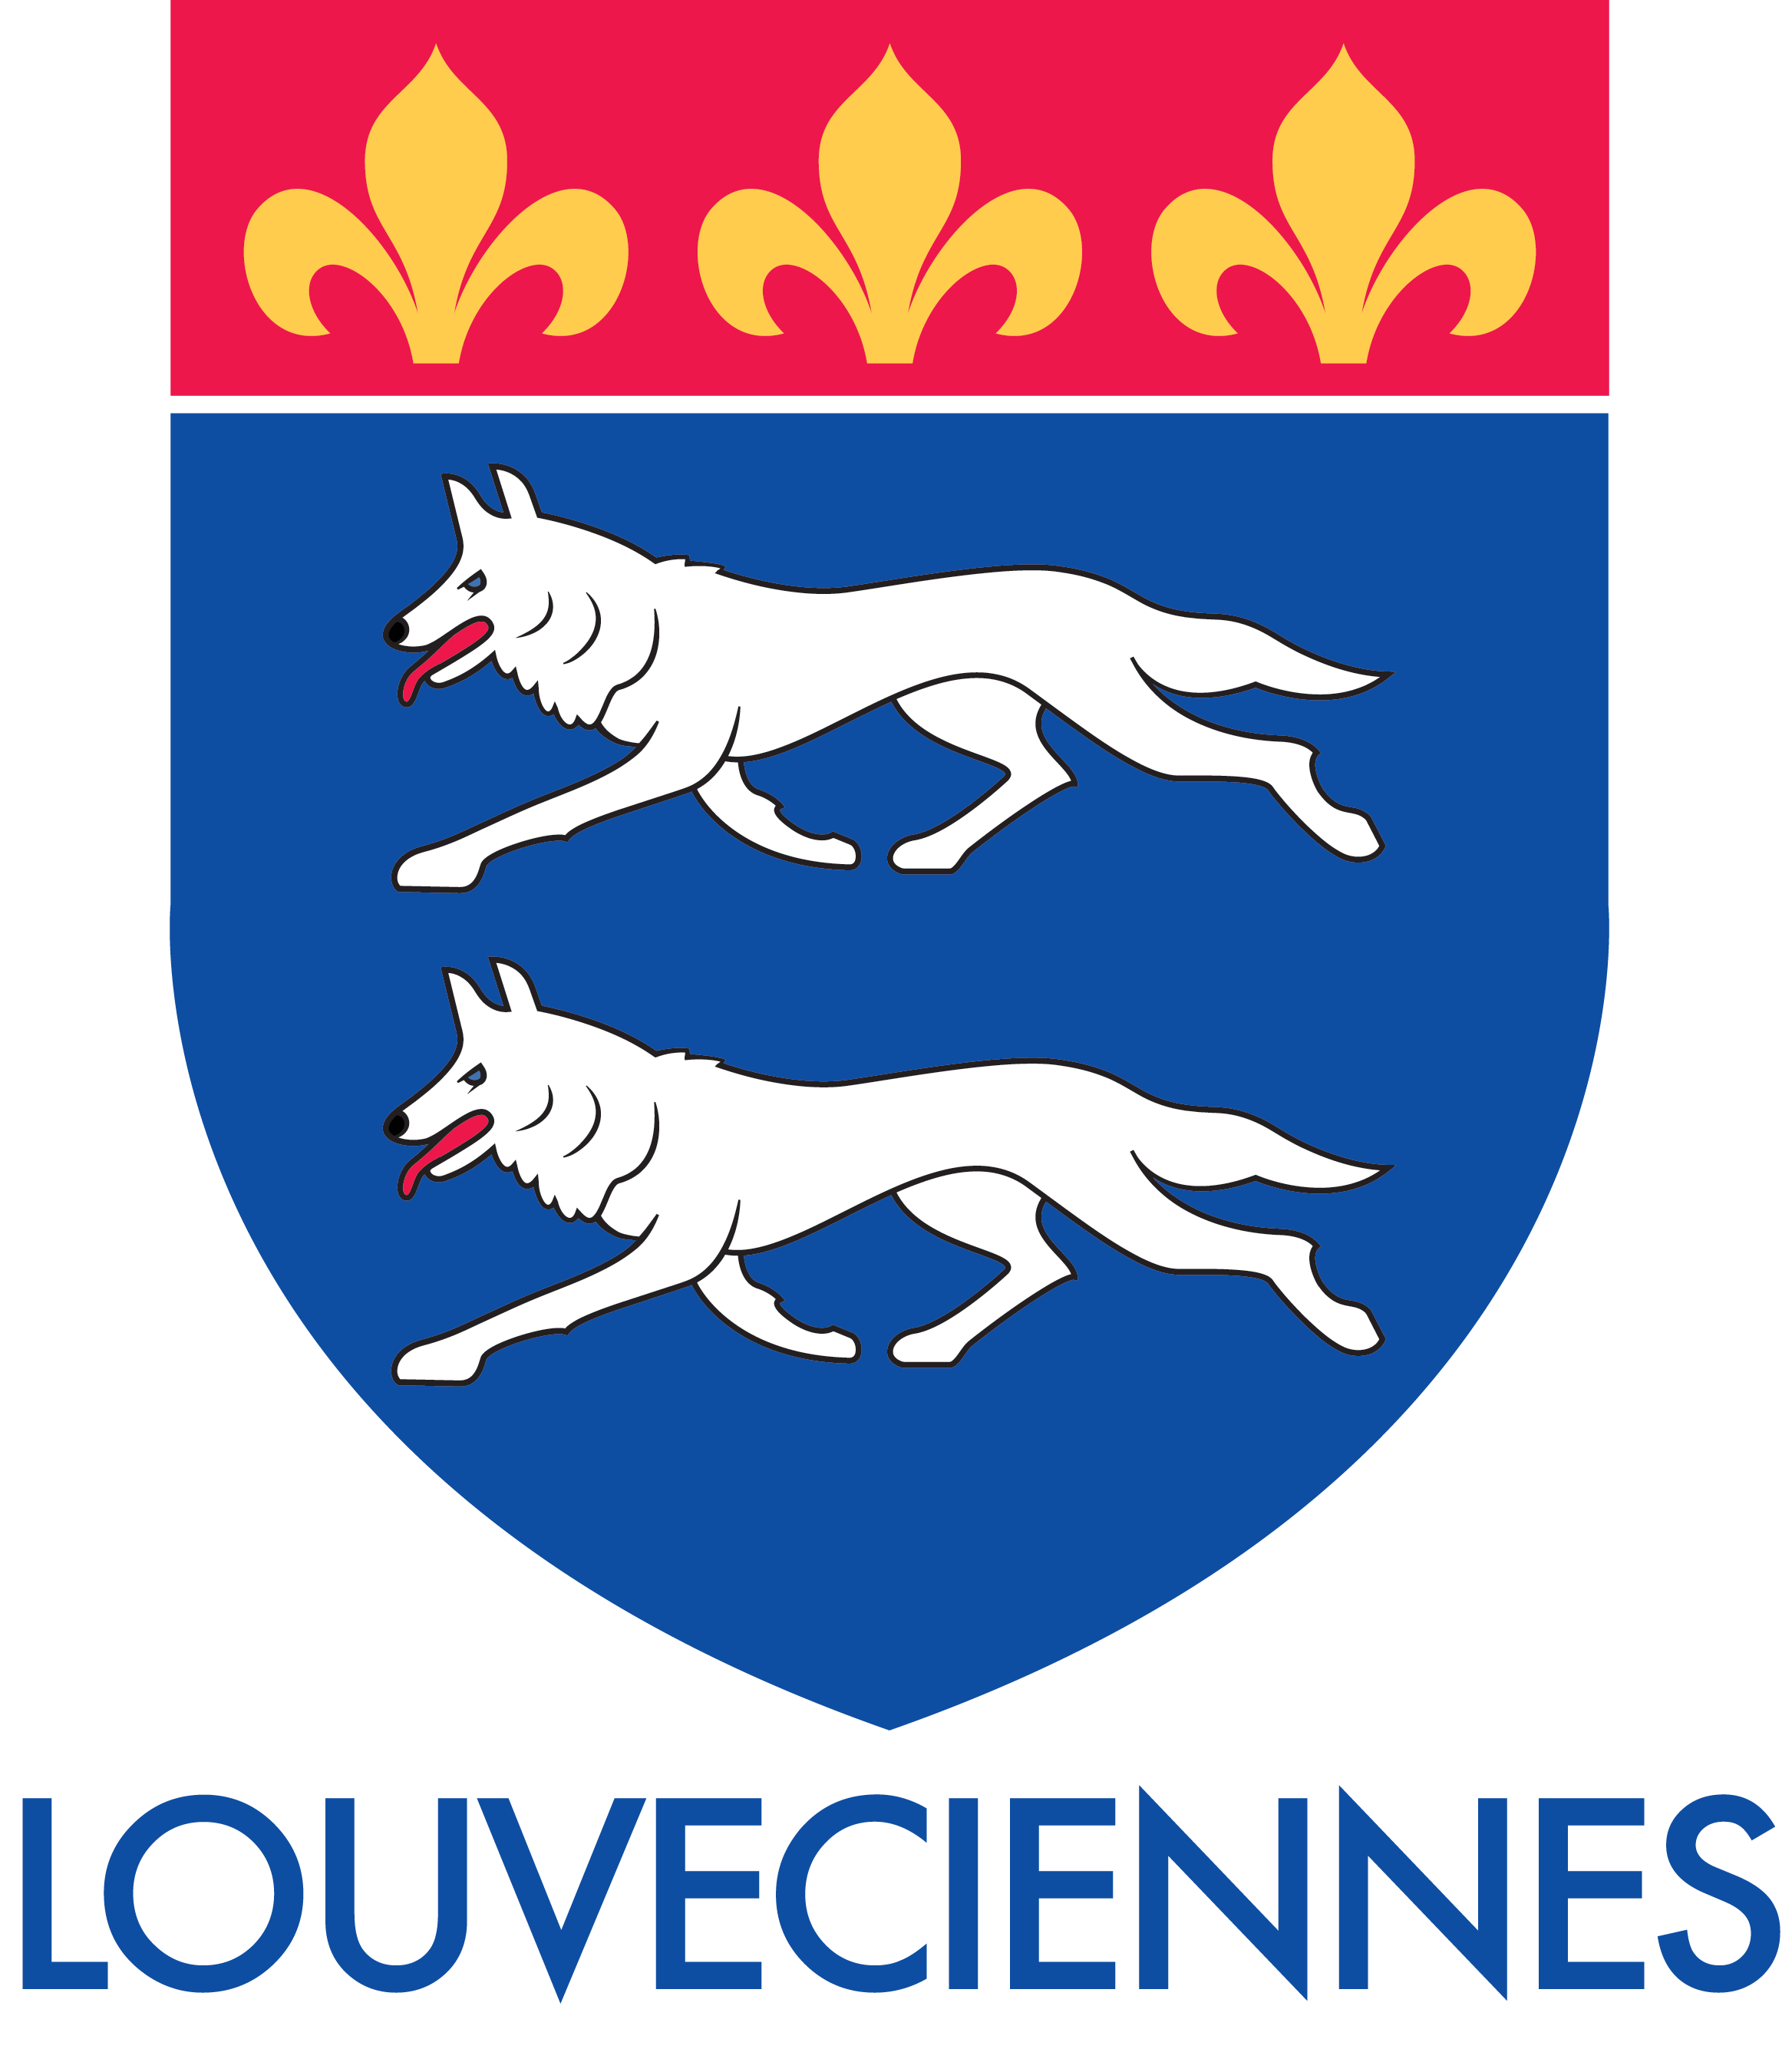 Louveciennes